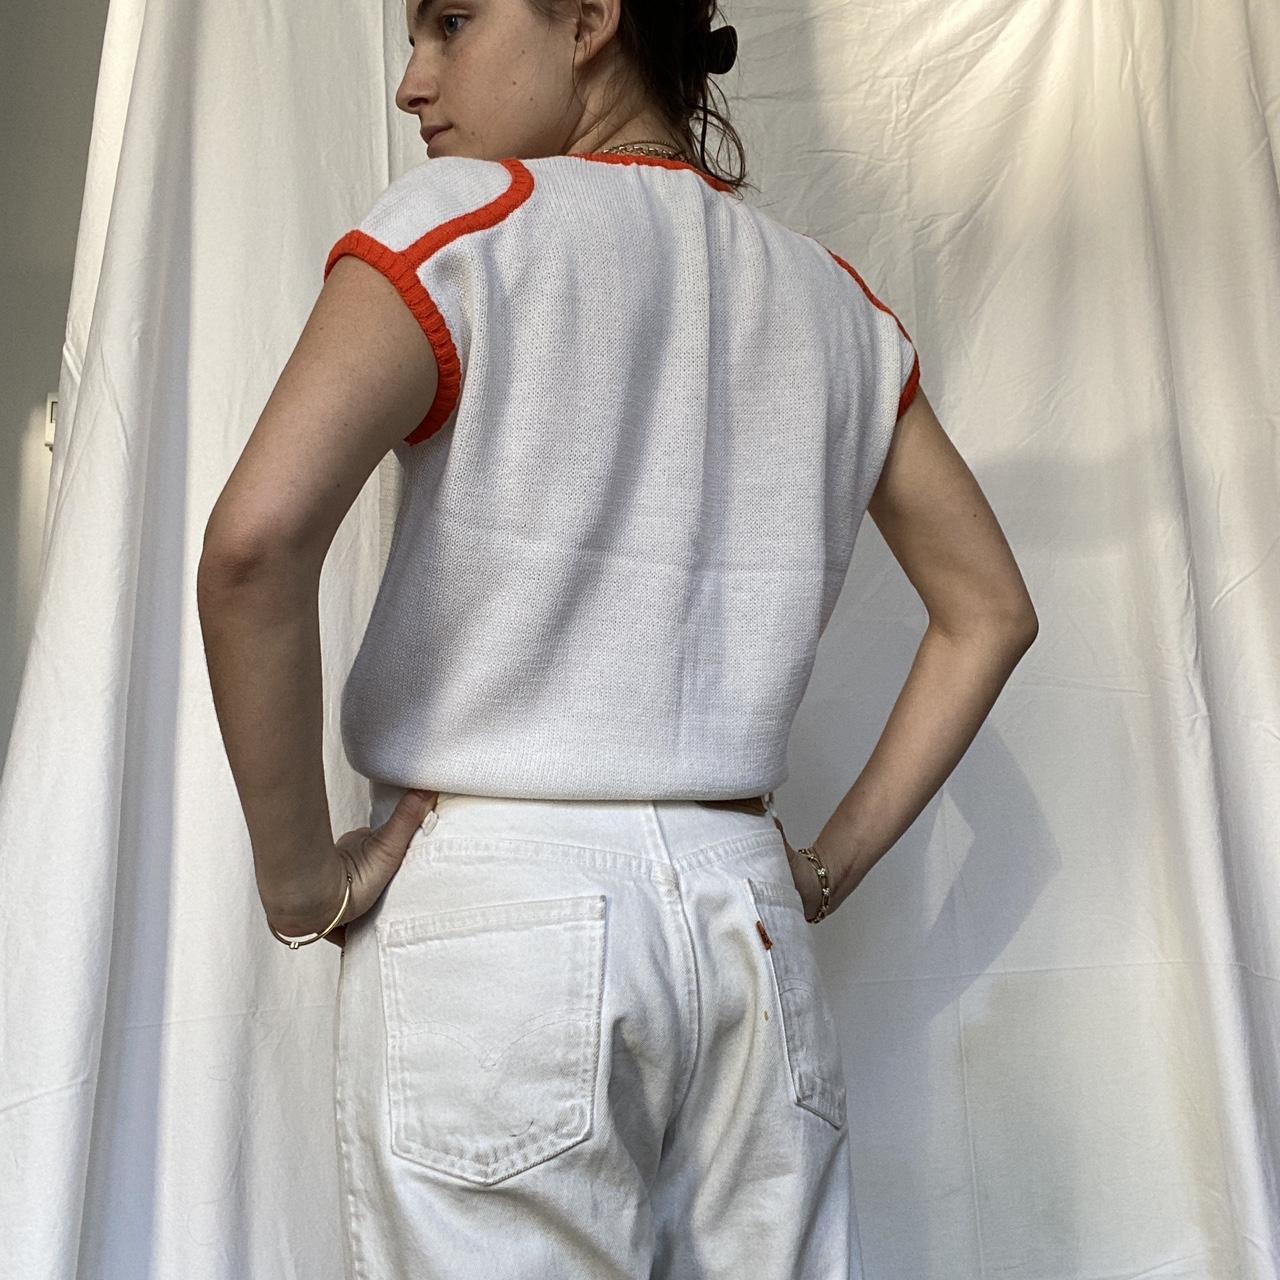 Courrèges Women's White and Orange Vest (3)